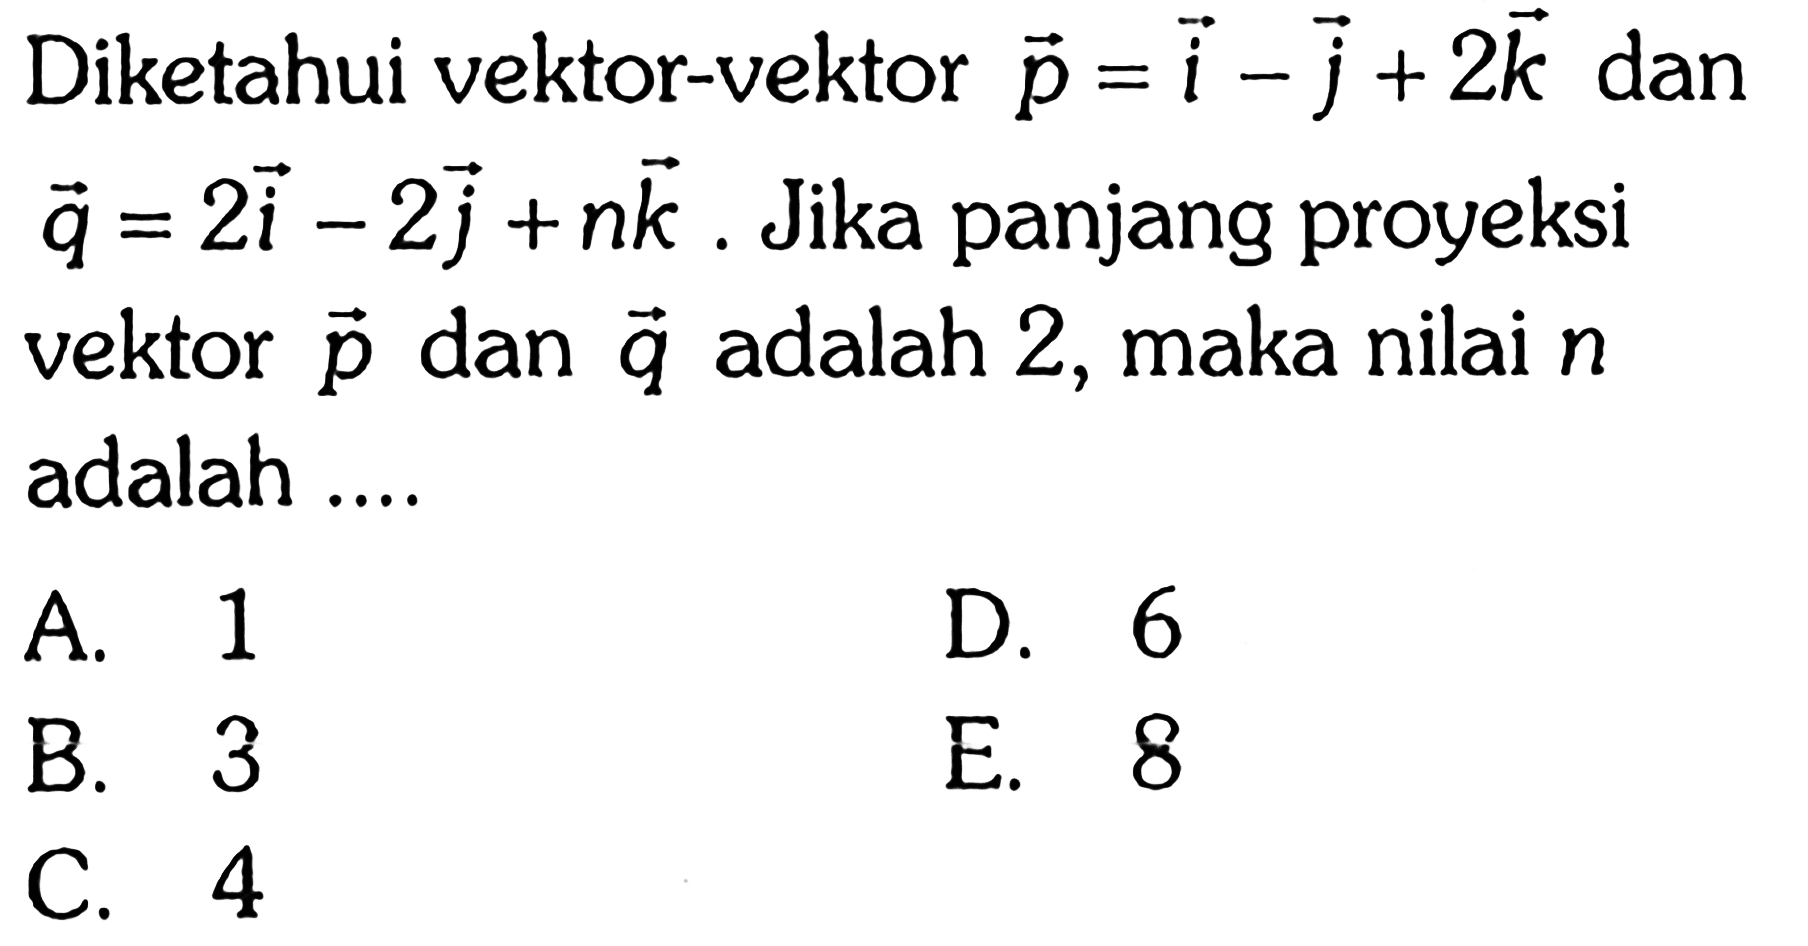 Diketahui vektor-vektor p=i-j+2k dan q=2i-2j+nk. Jika panjang proyeksi vektor p dan q adalah 2, maka nilai n adalah ....